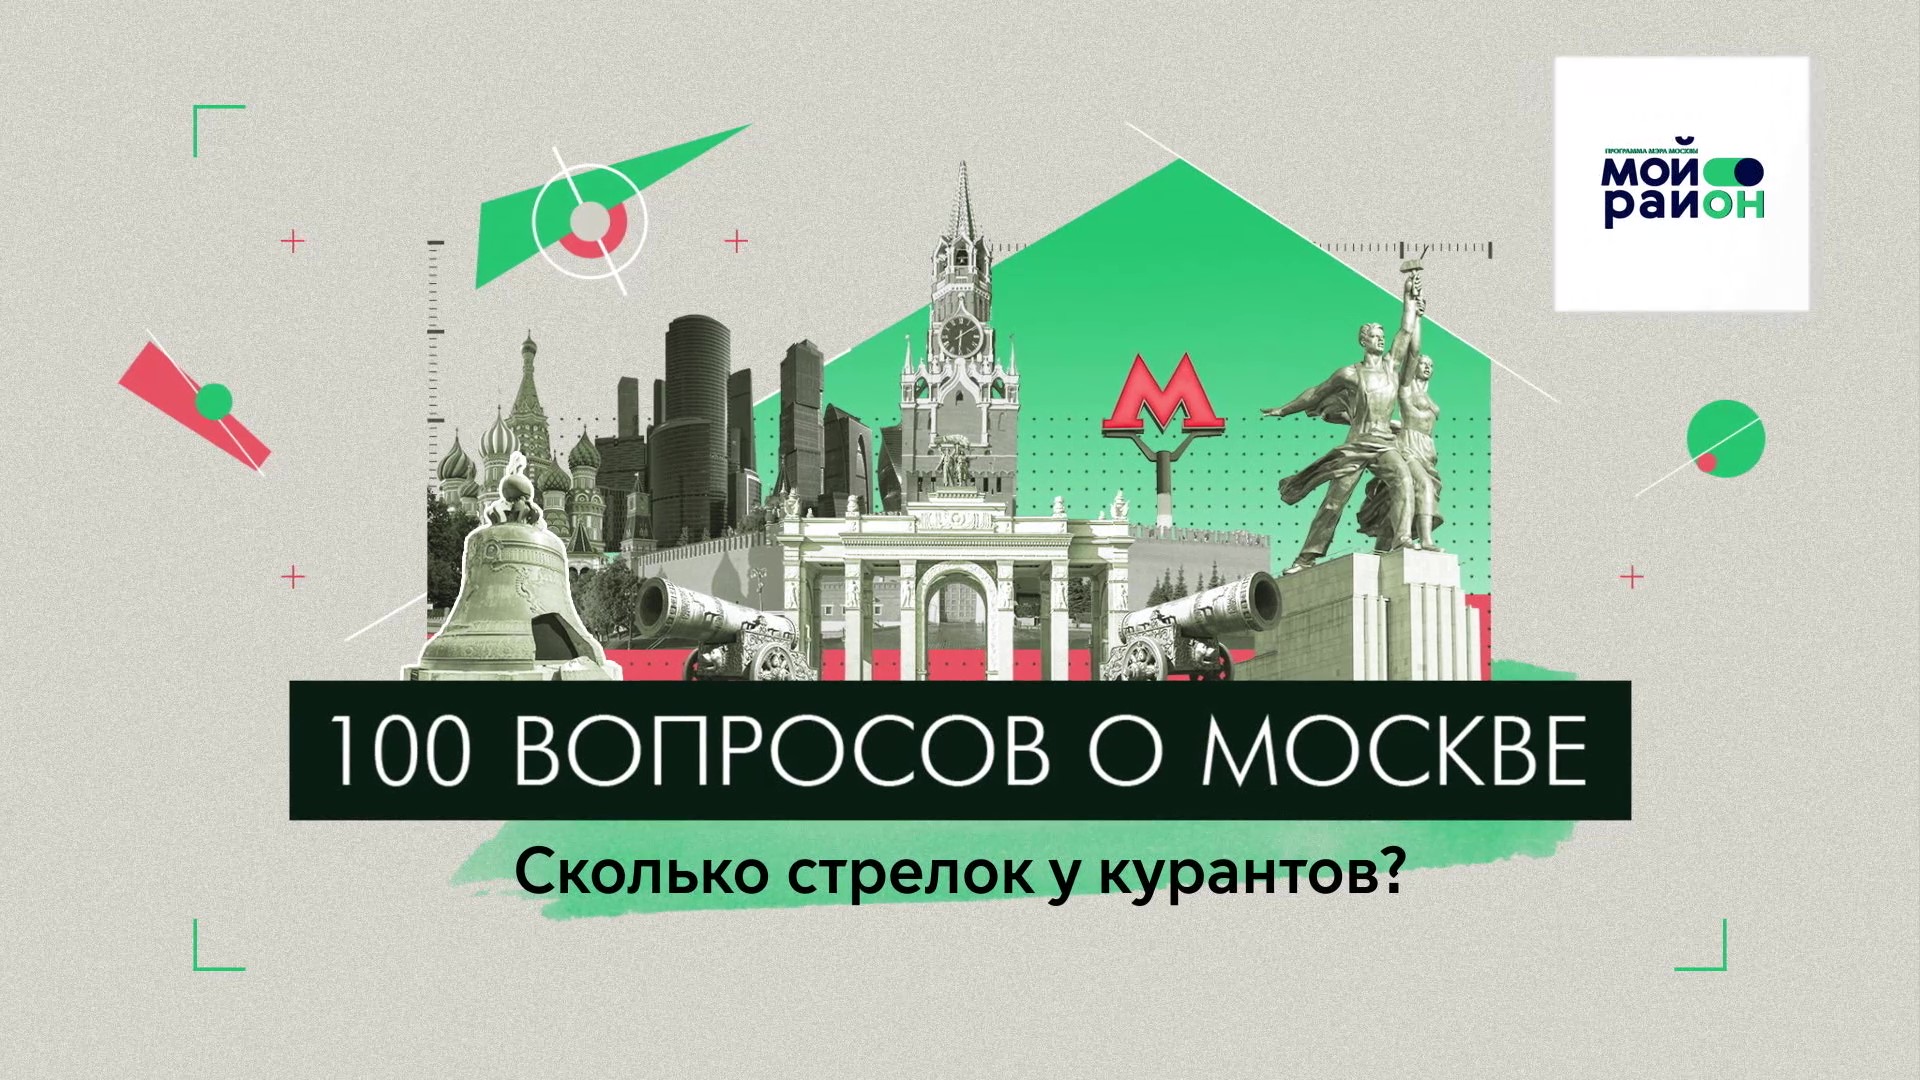 100 вопросов о Москве: Сколько стрелок у курантов?